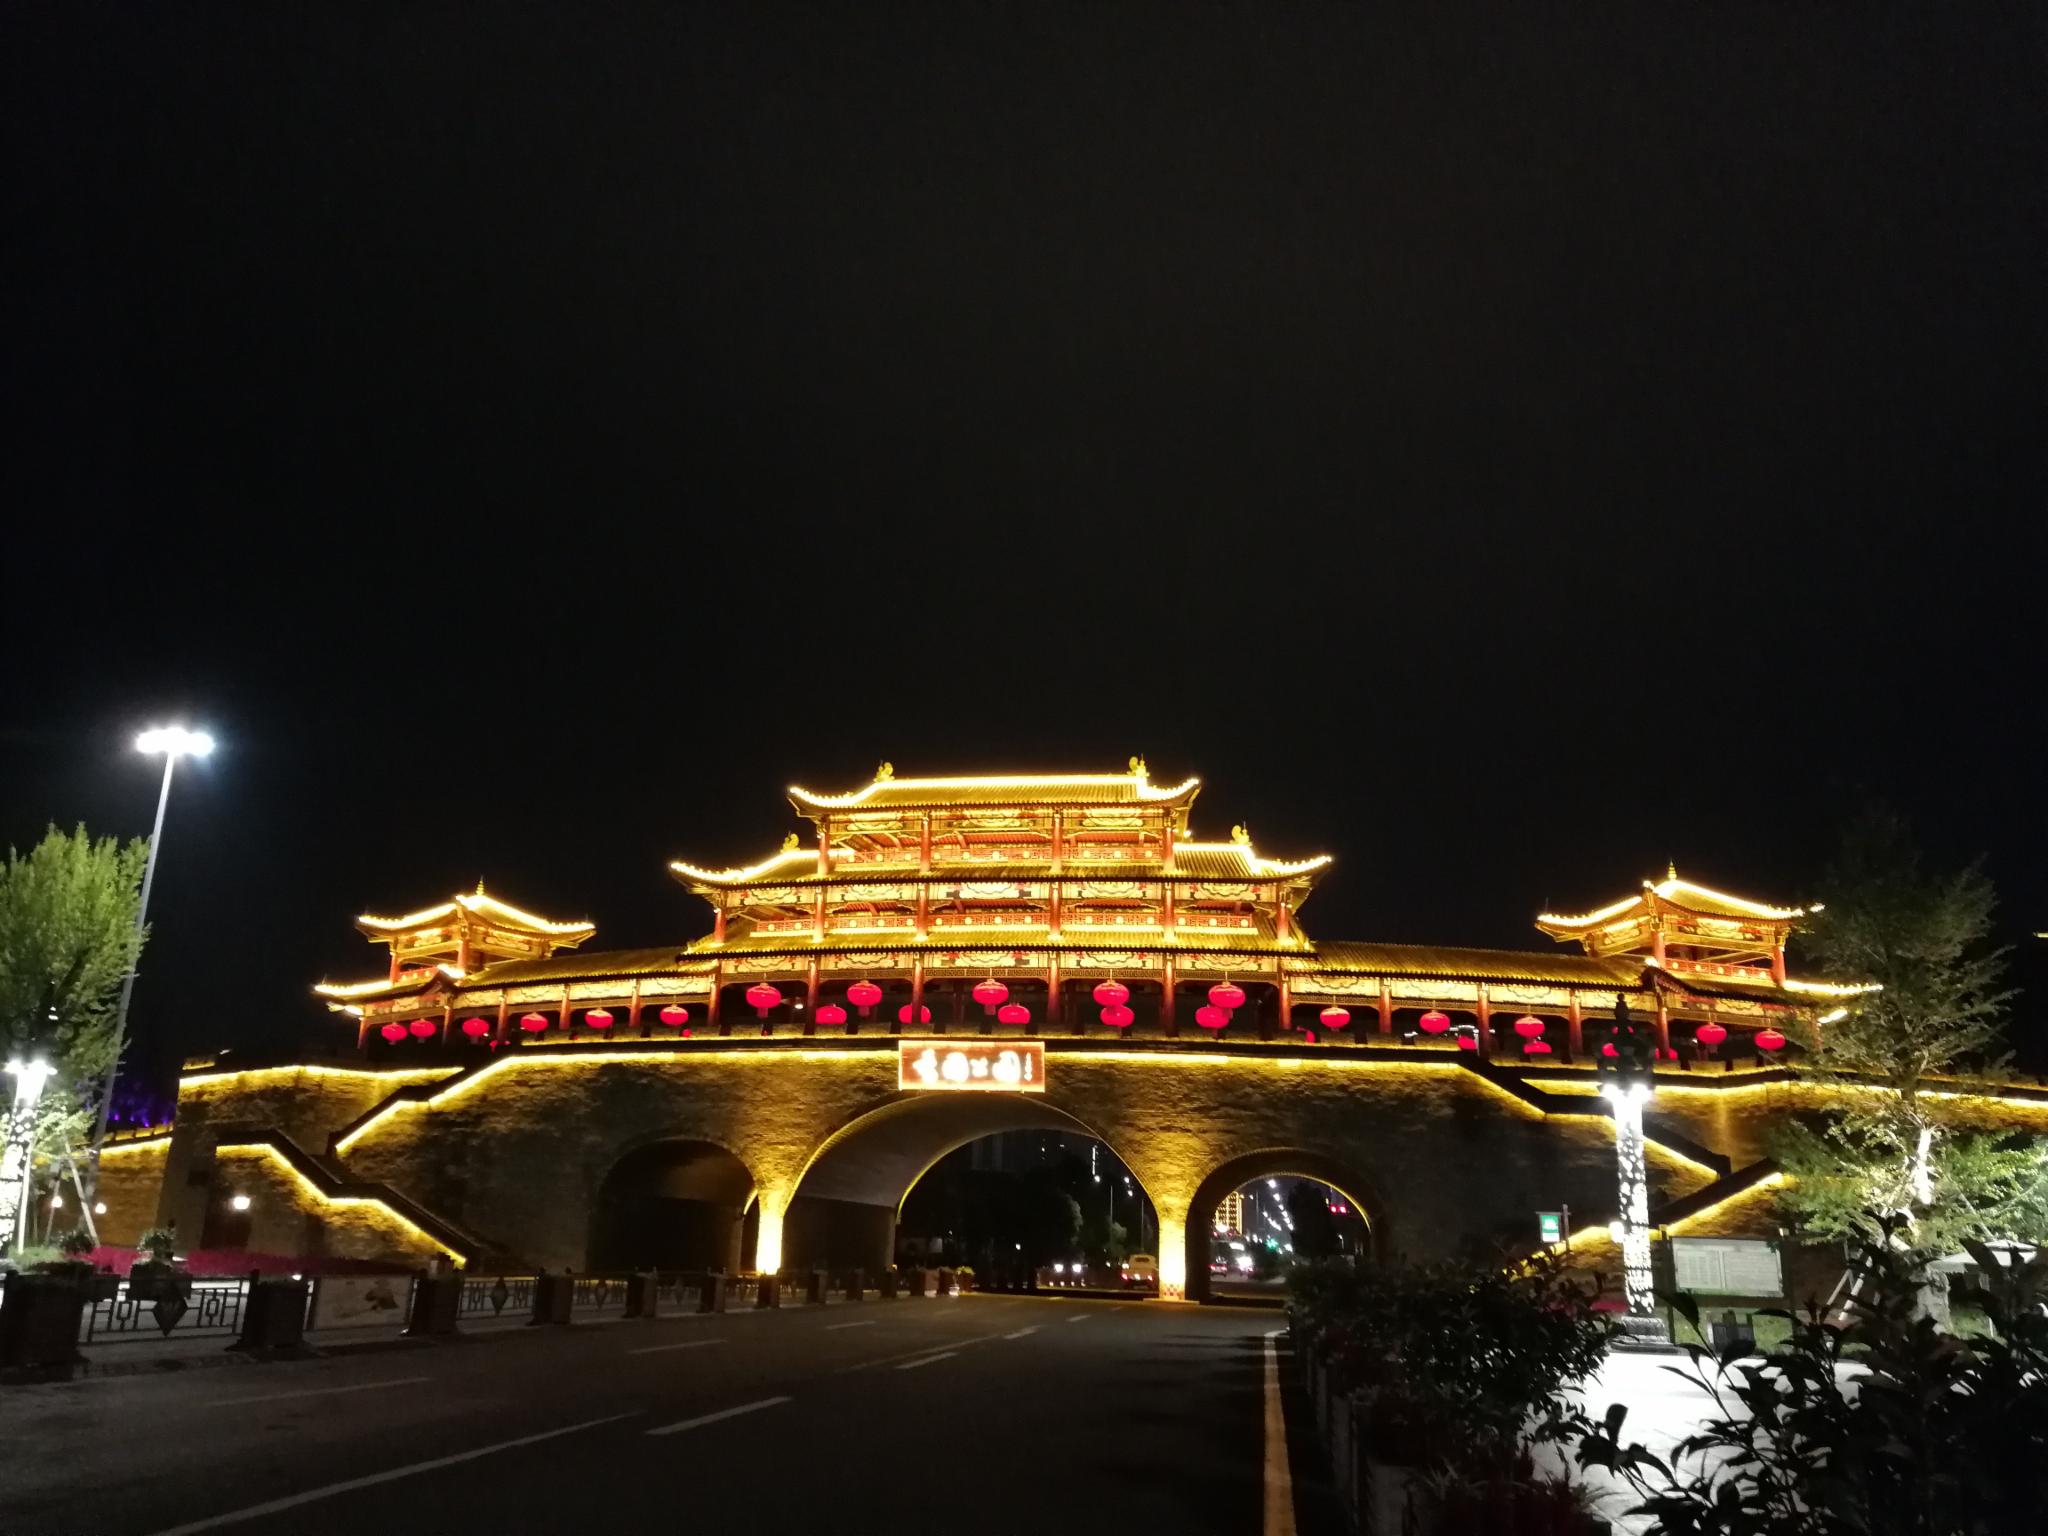 艾肯机构与重庆泽京集团联手打造大足海棠香国旅游项目